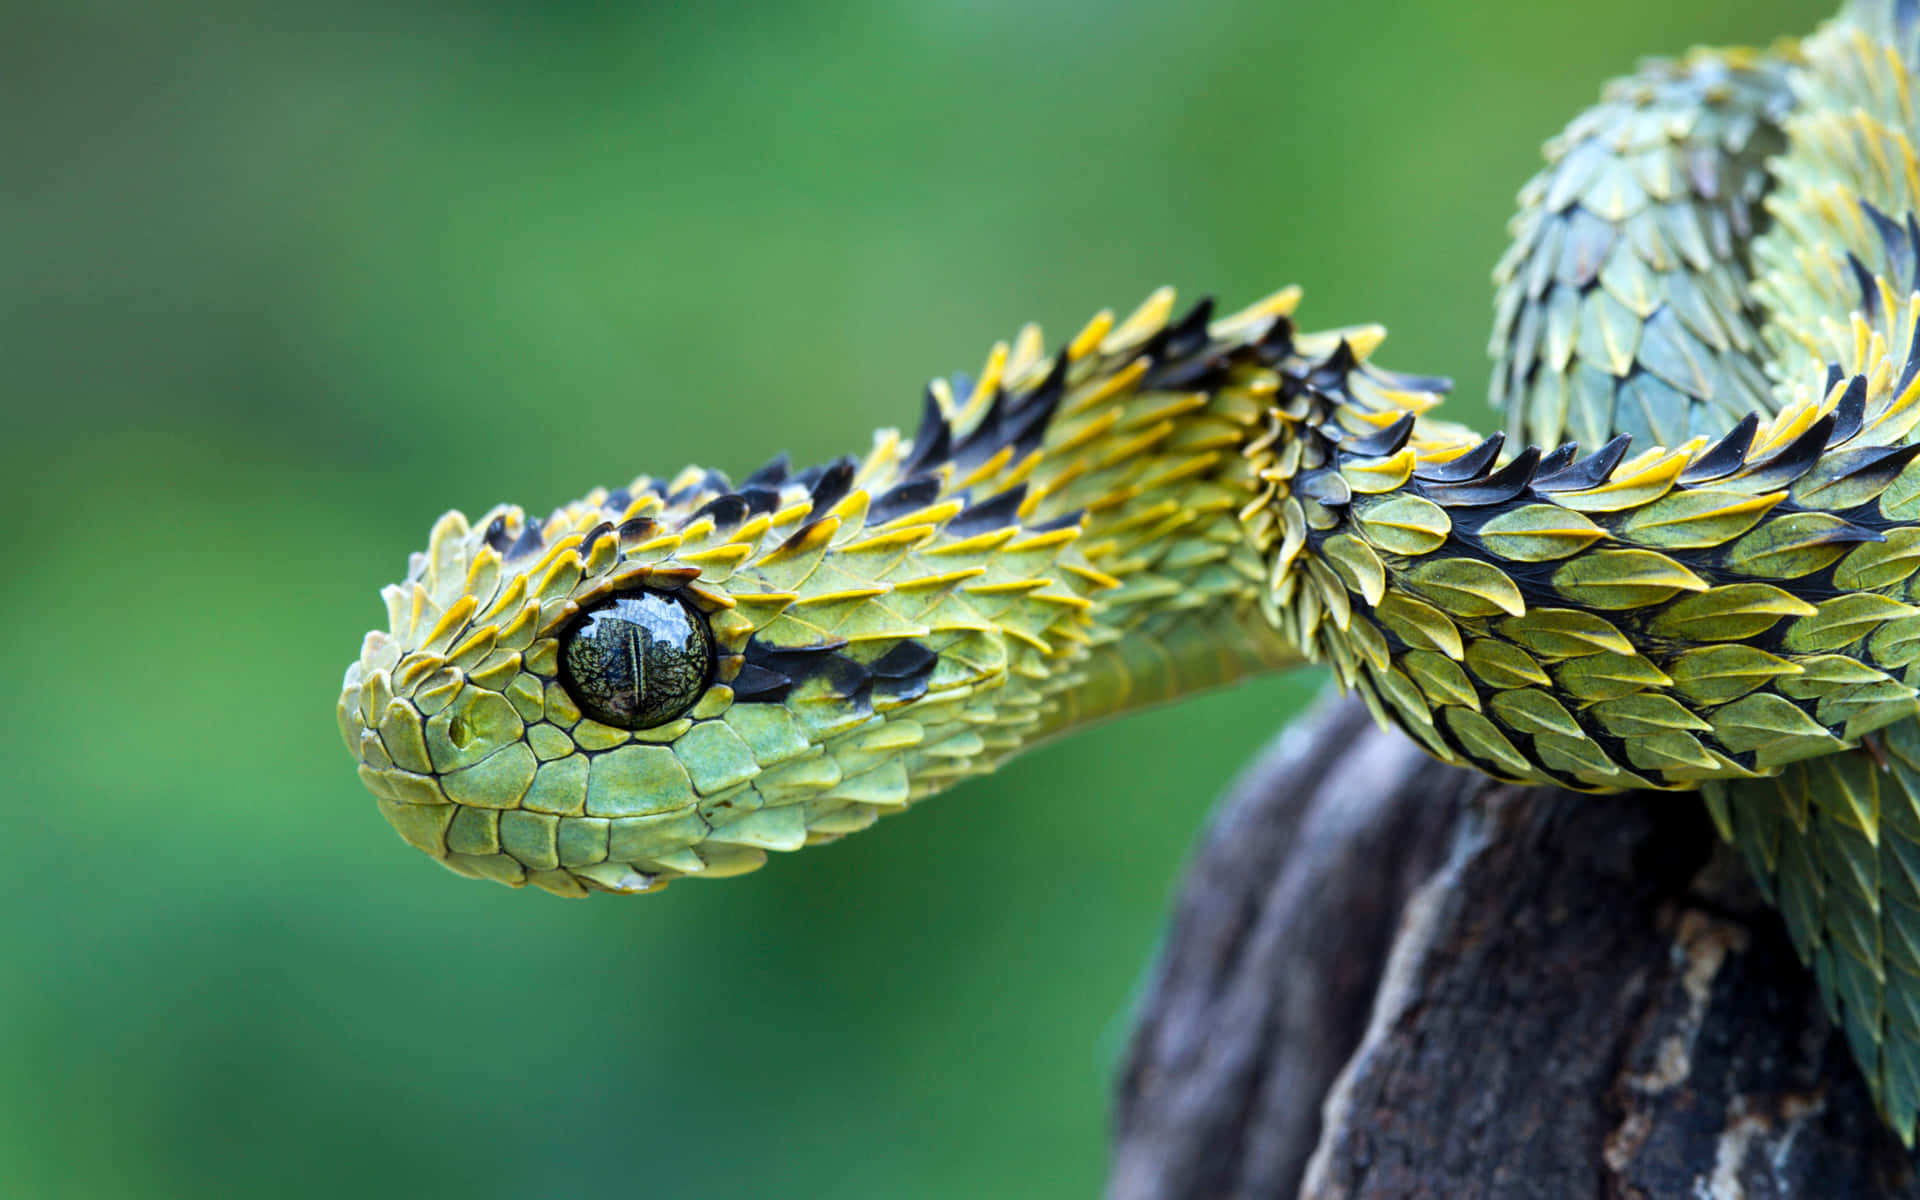 A Slithering Snake